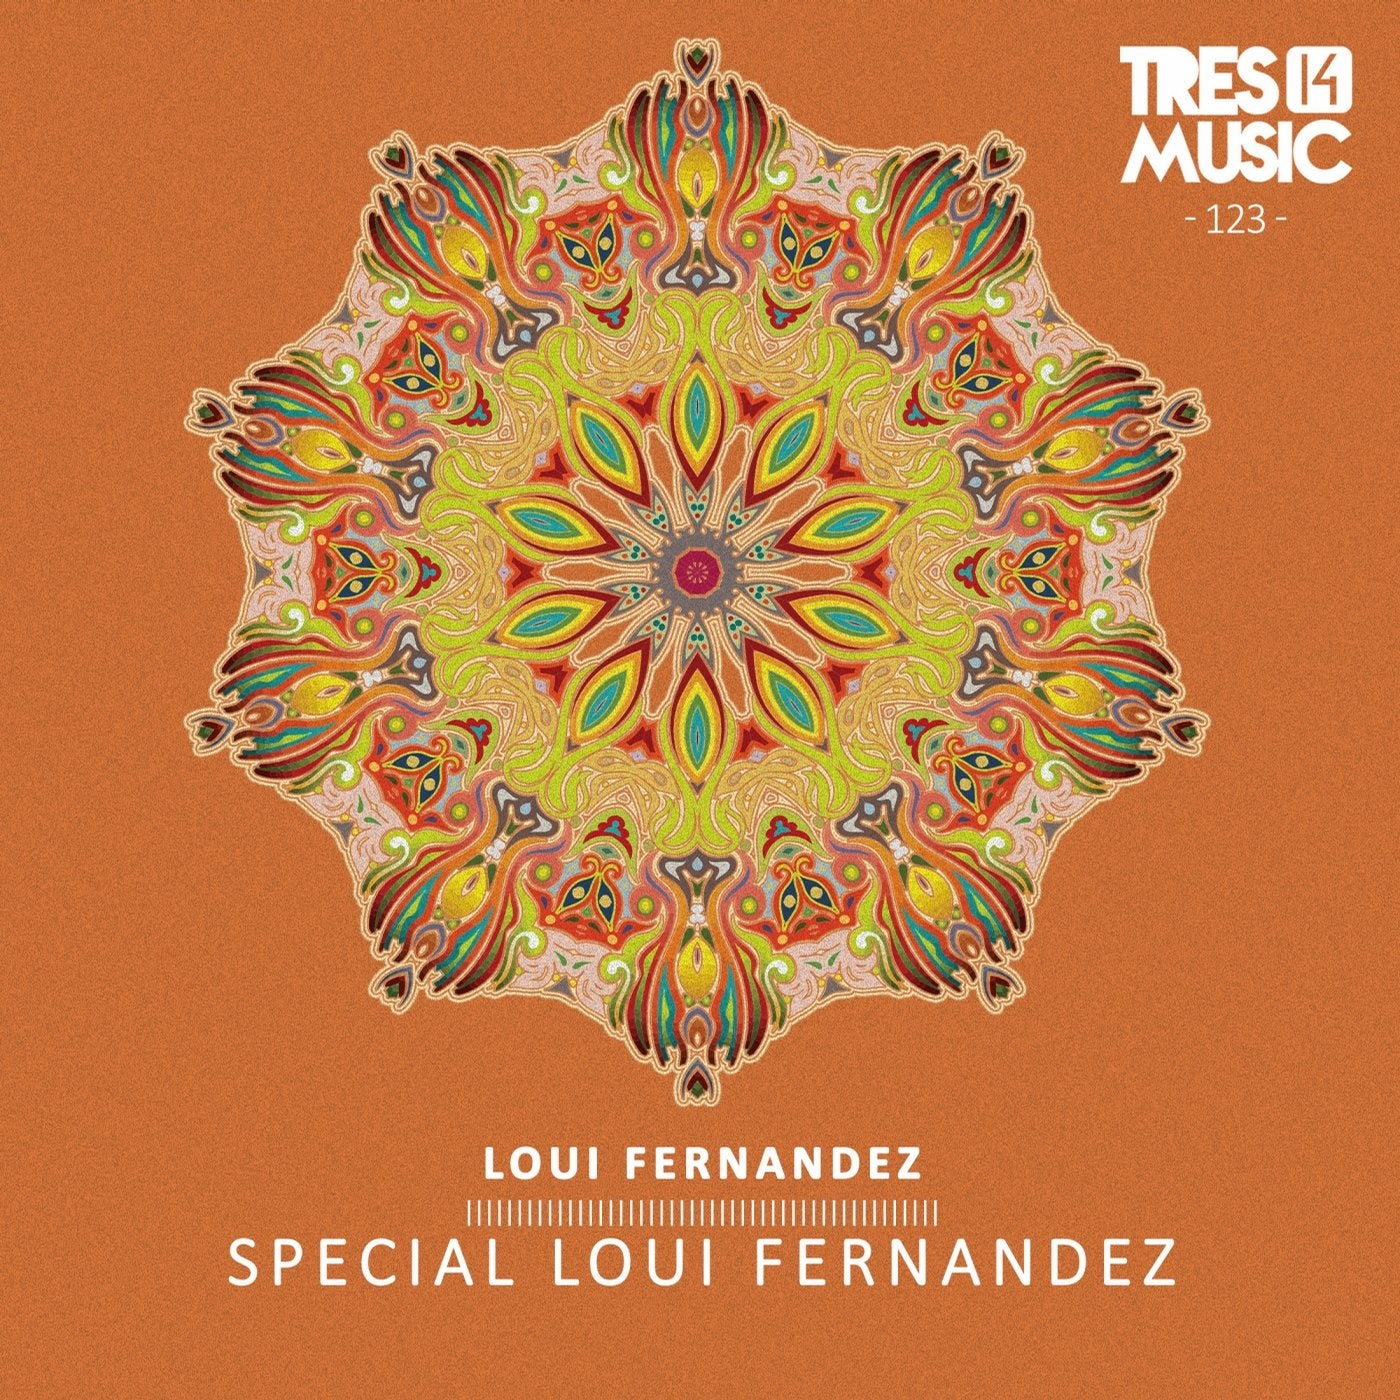 Special Loui Fernandez